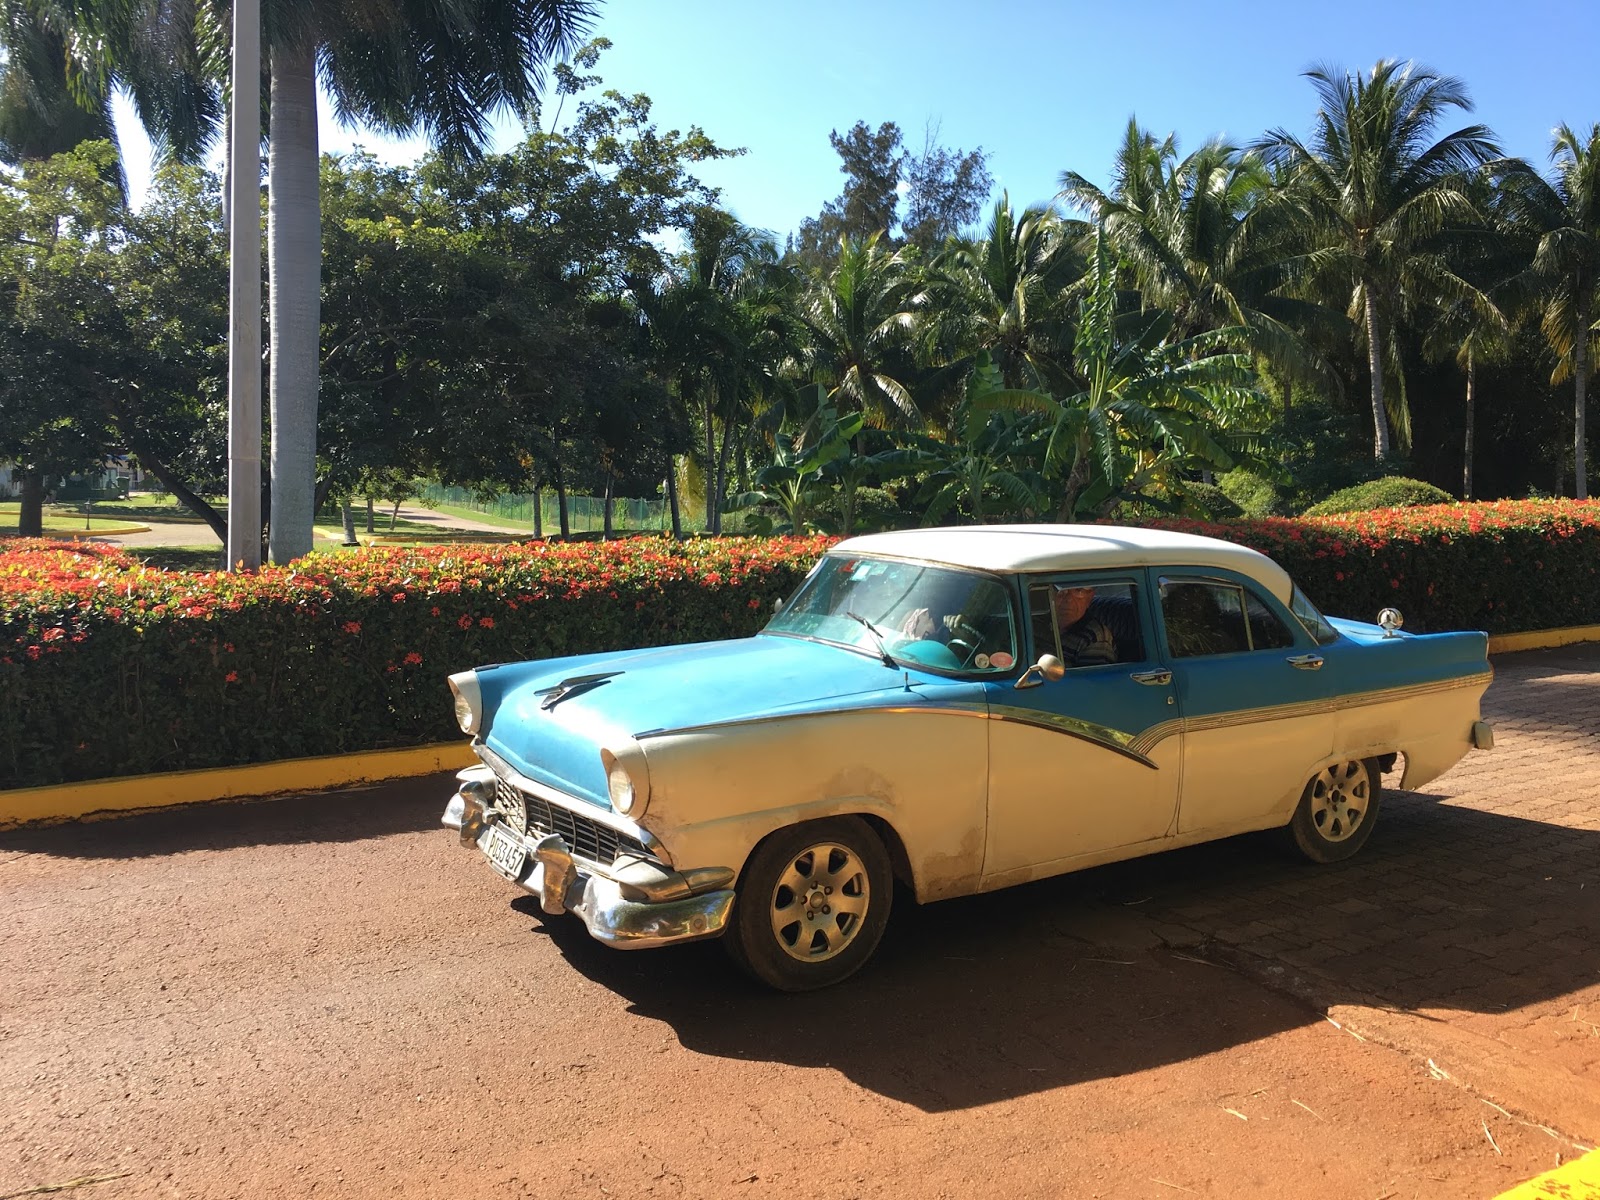 キューバ旅行 車で見るキューバの外交関係 オンボードキャリア